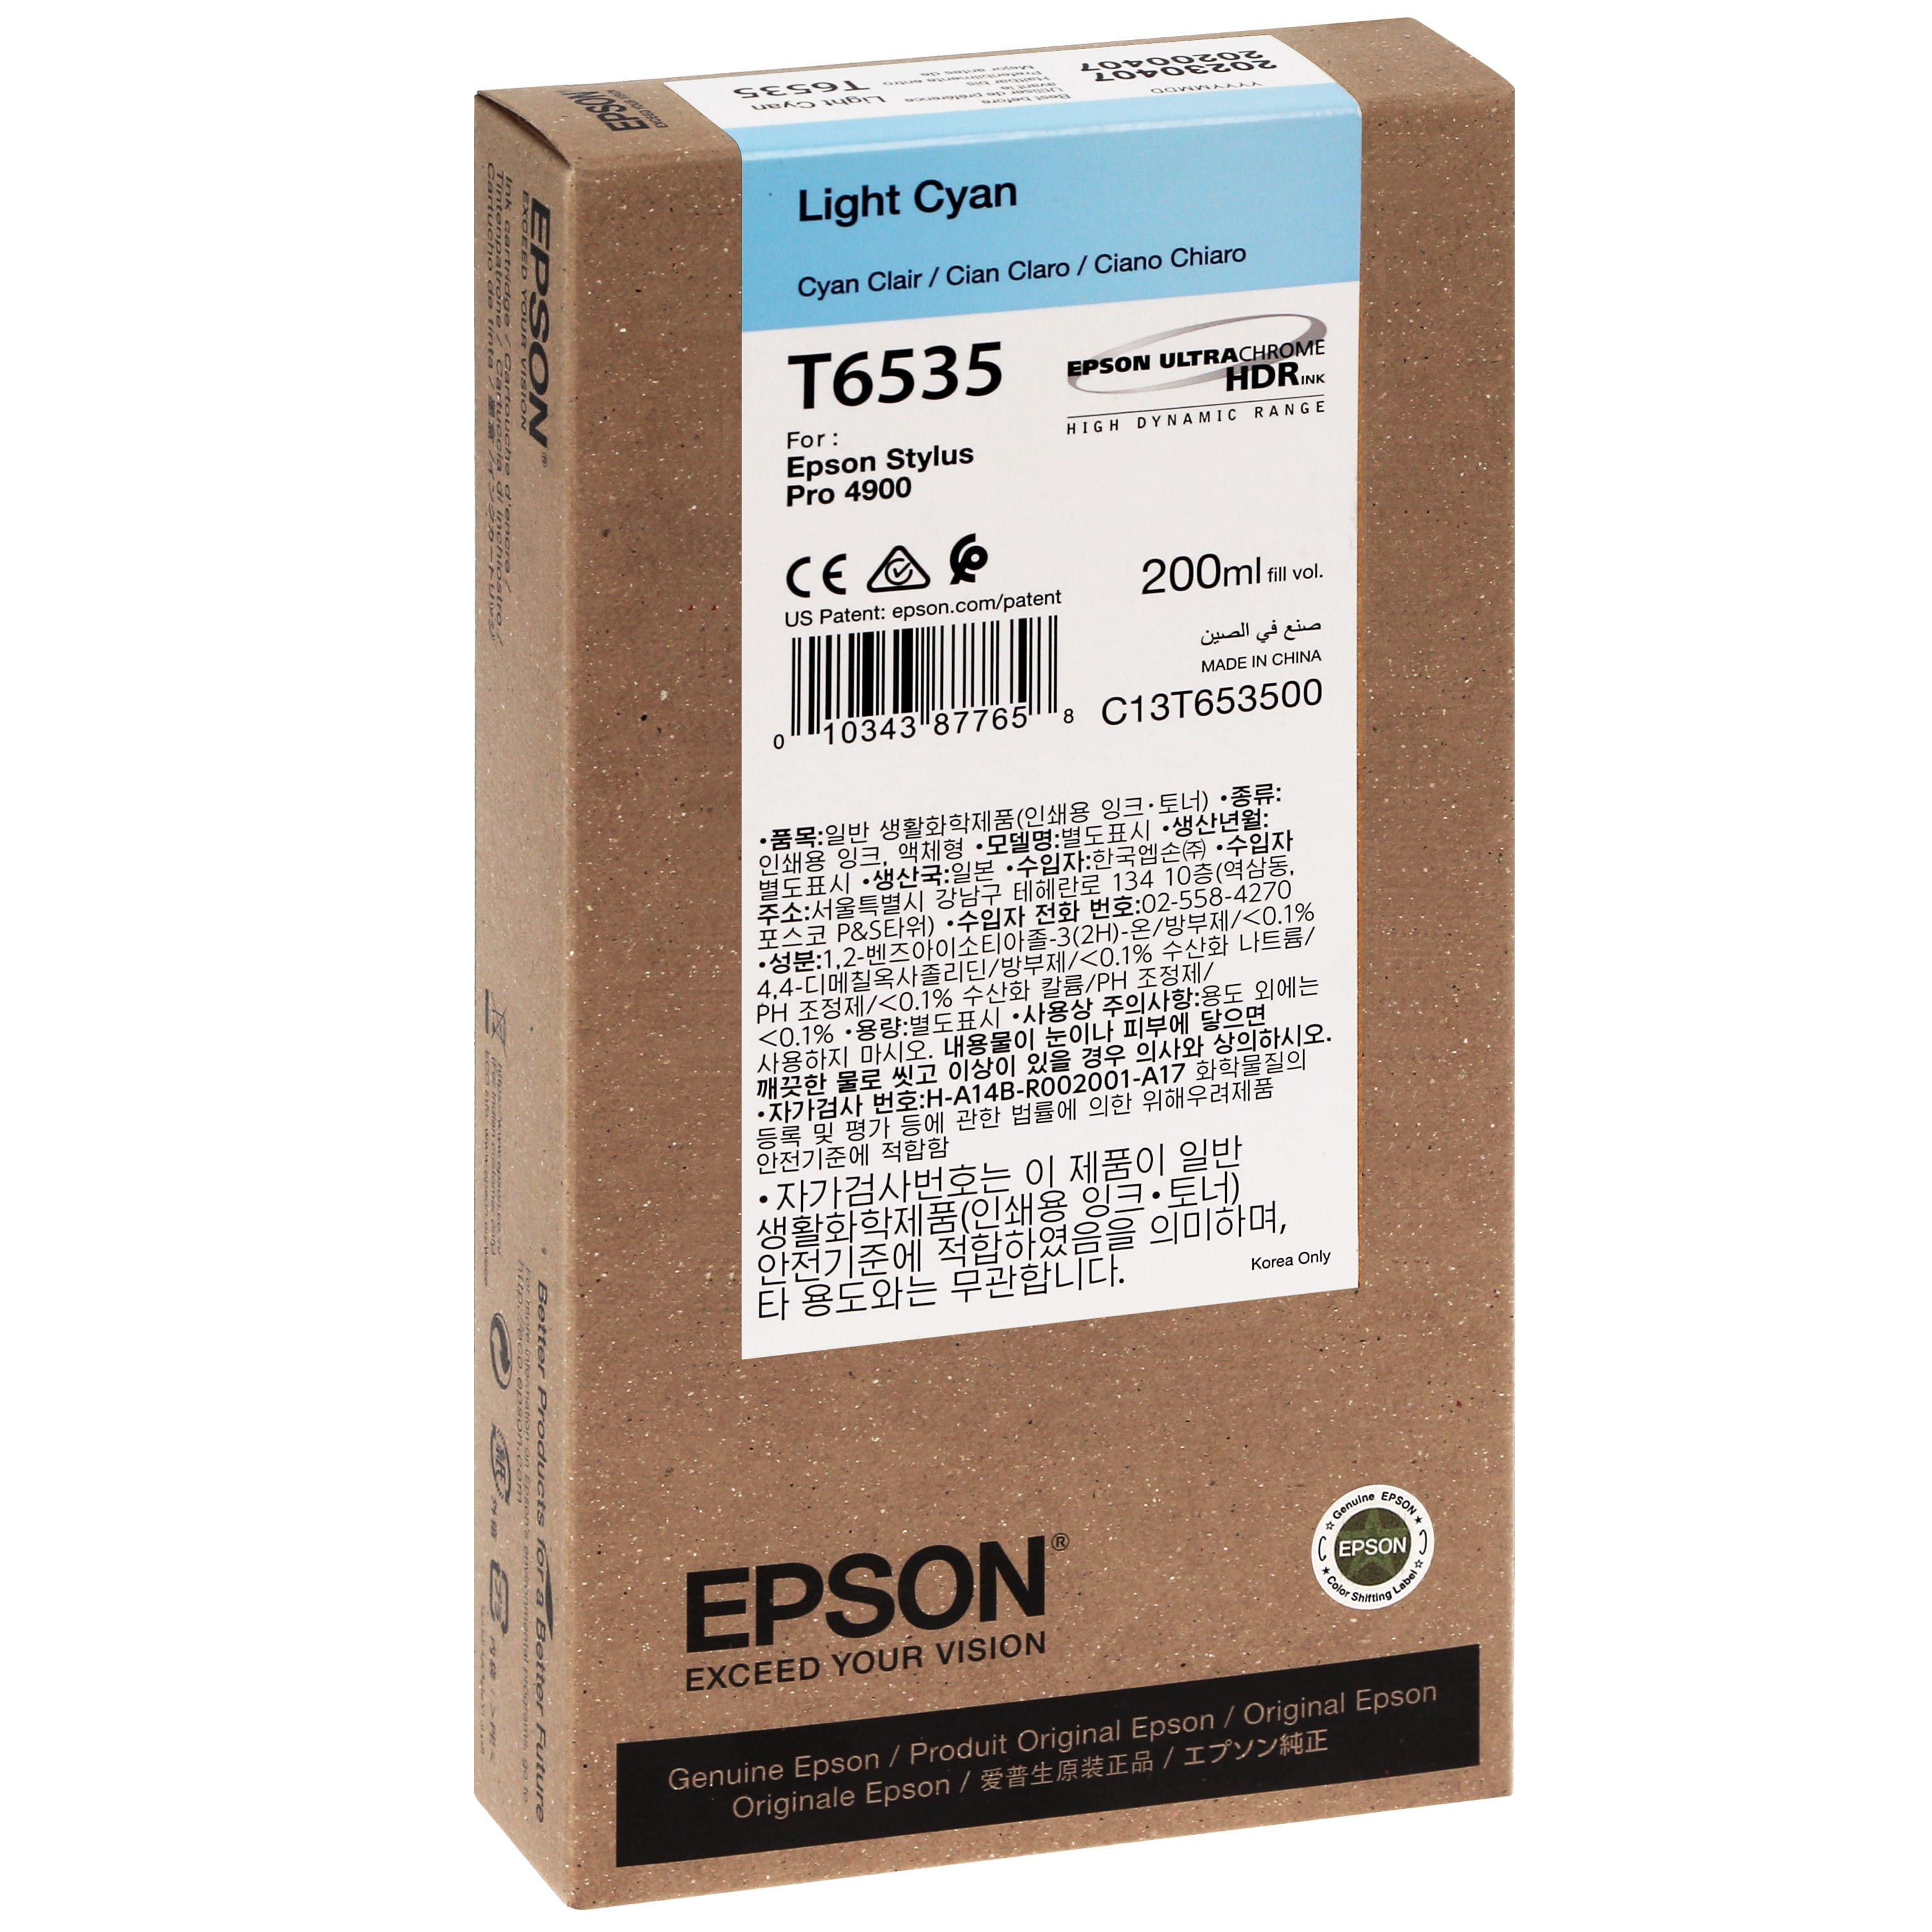 EPSON - Cartouche d'encre traceur T6535 Pour imprimante 4900 Cyan clair - 200ml